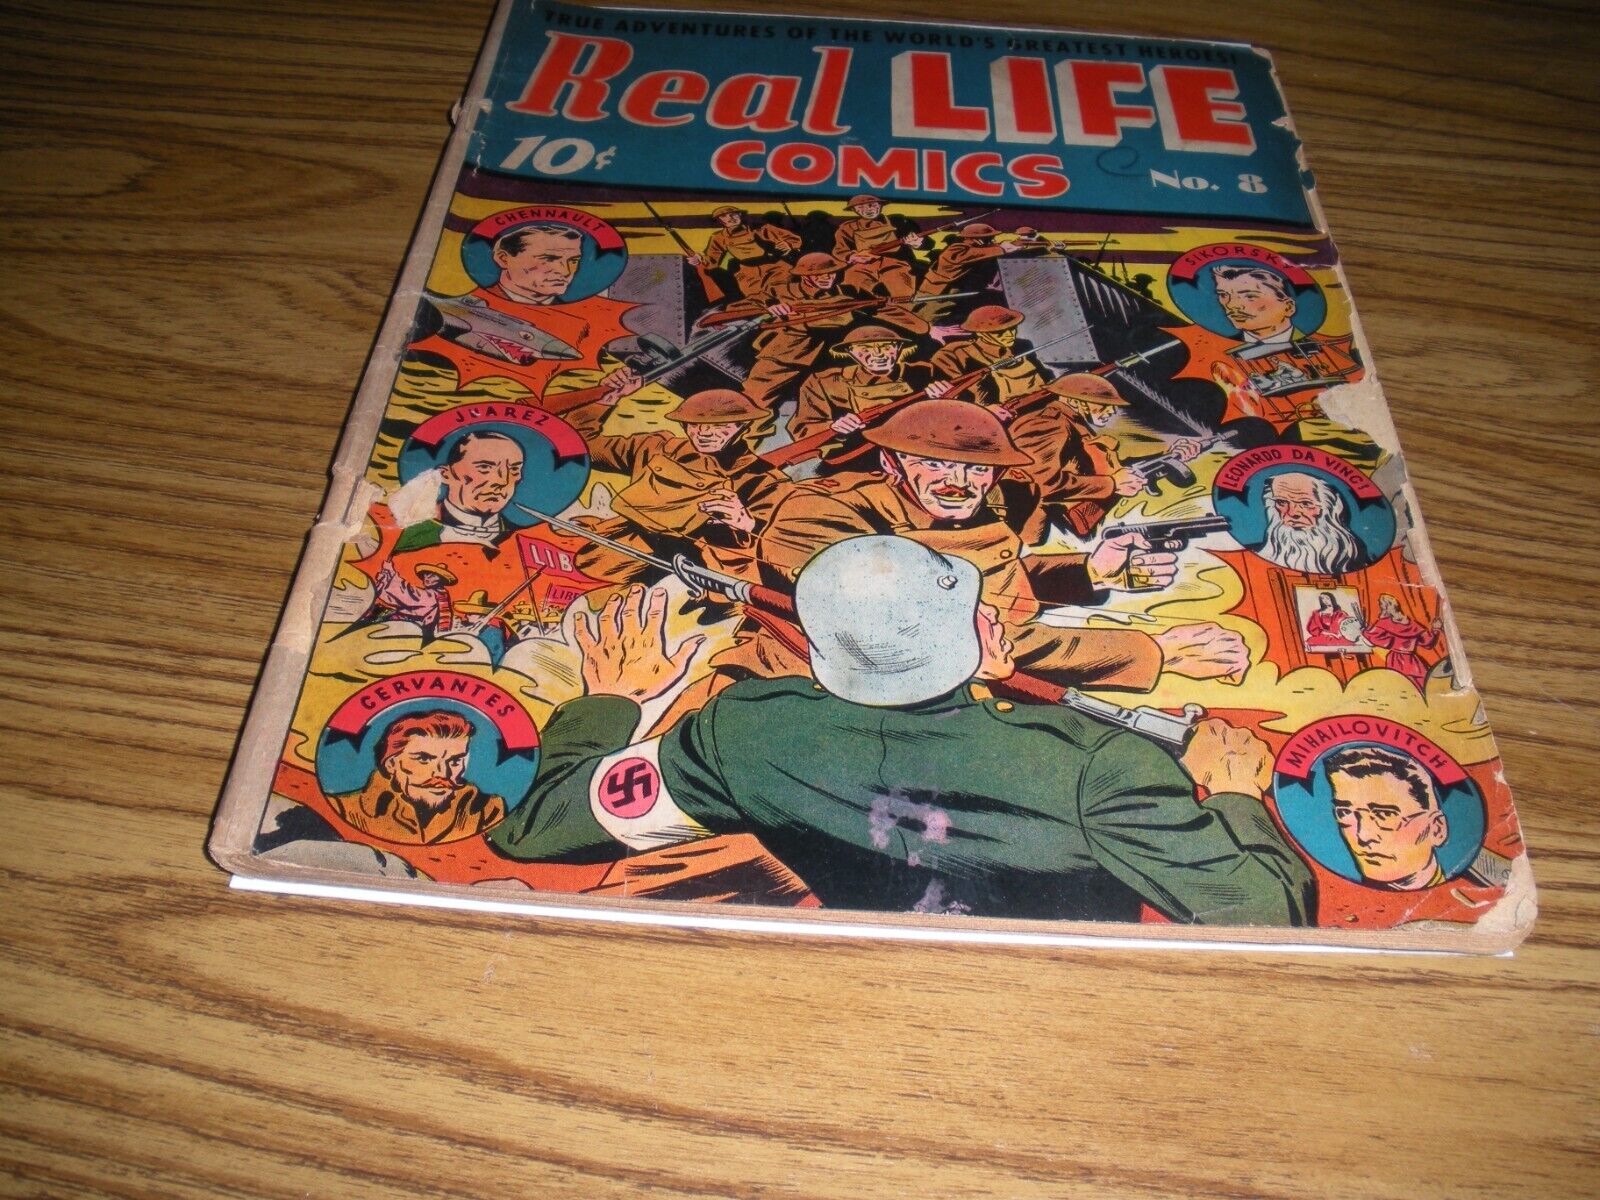 REAL LIFE COMICS #8 WAR COVER ALEX SCHOMBERG ART NOVEMBER 1942 VG+